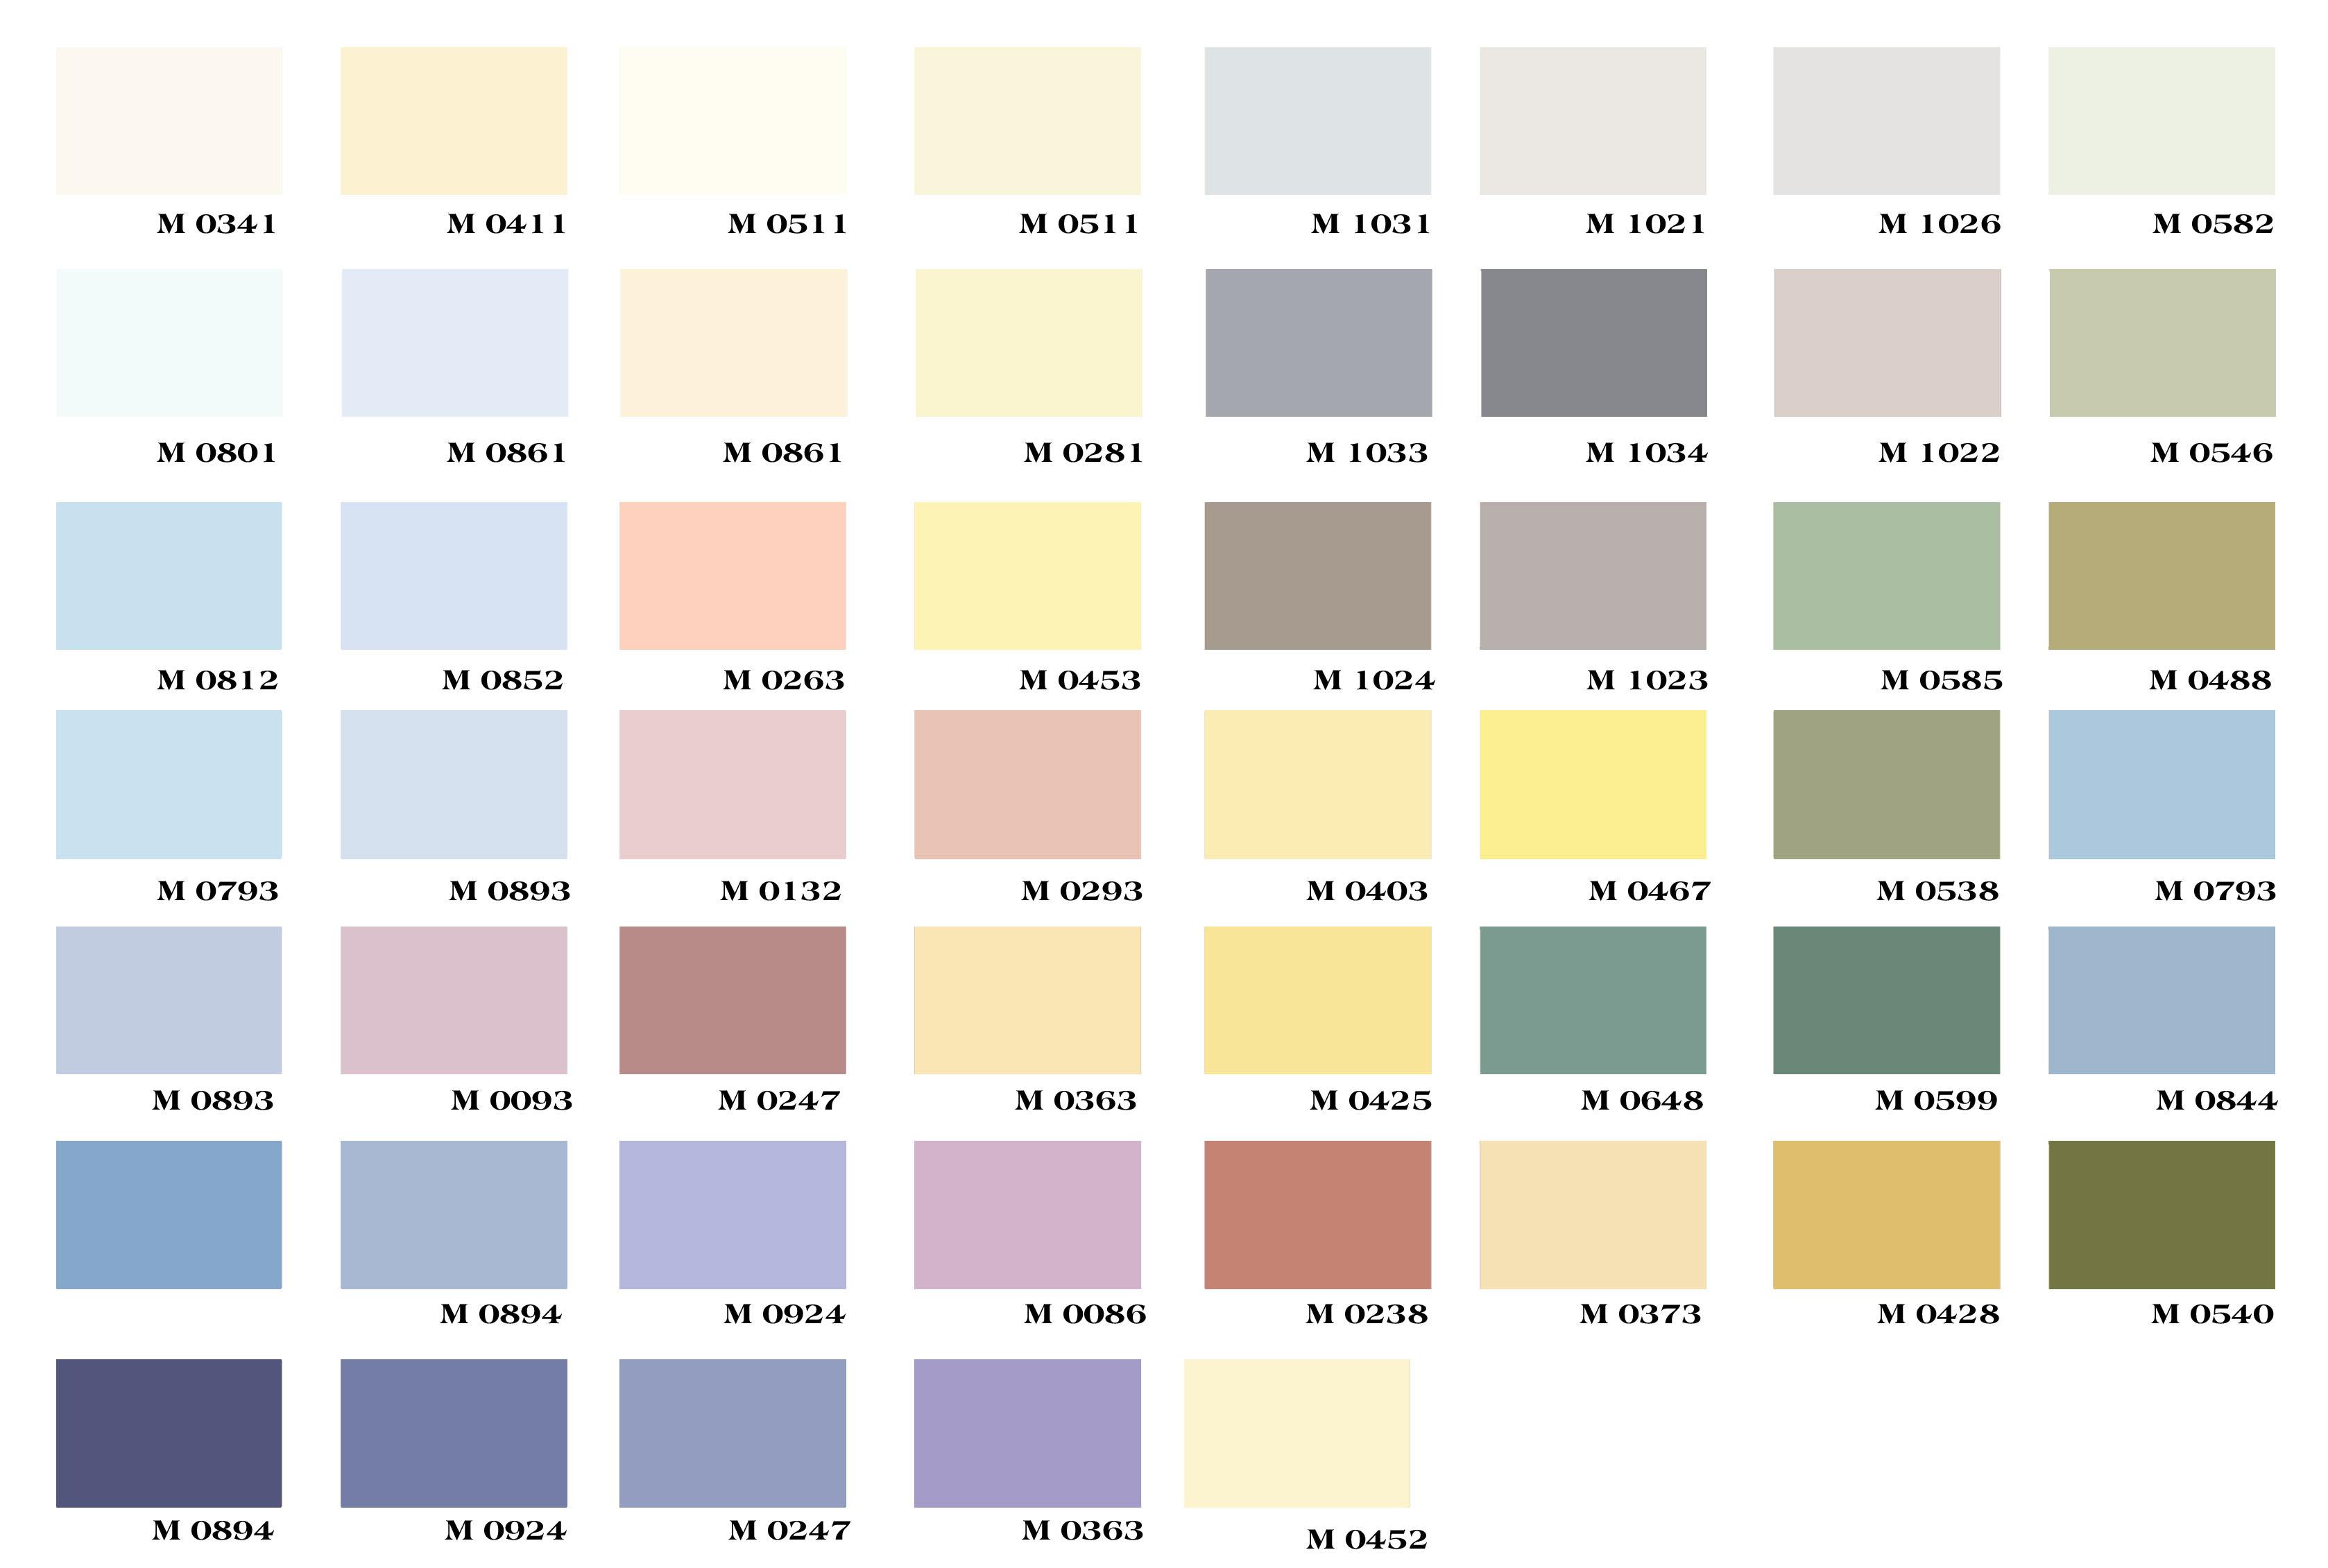 Bạn muốn tìm kiếm bảng màu sơn ngoại thất độc đáo và đẹp mắt? Hãy khám phá bảng màu sơn ngoại thất Mykolor Semigloss Finish - sản phẩm với nhiều sắc màu đa dạng và phù hợp cho mọi phong cách kiến trúc.